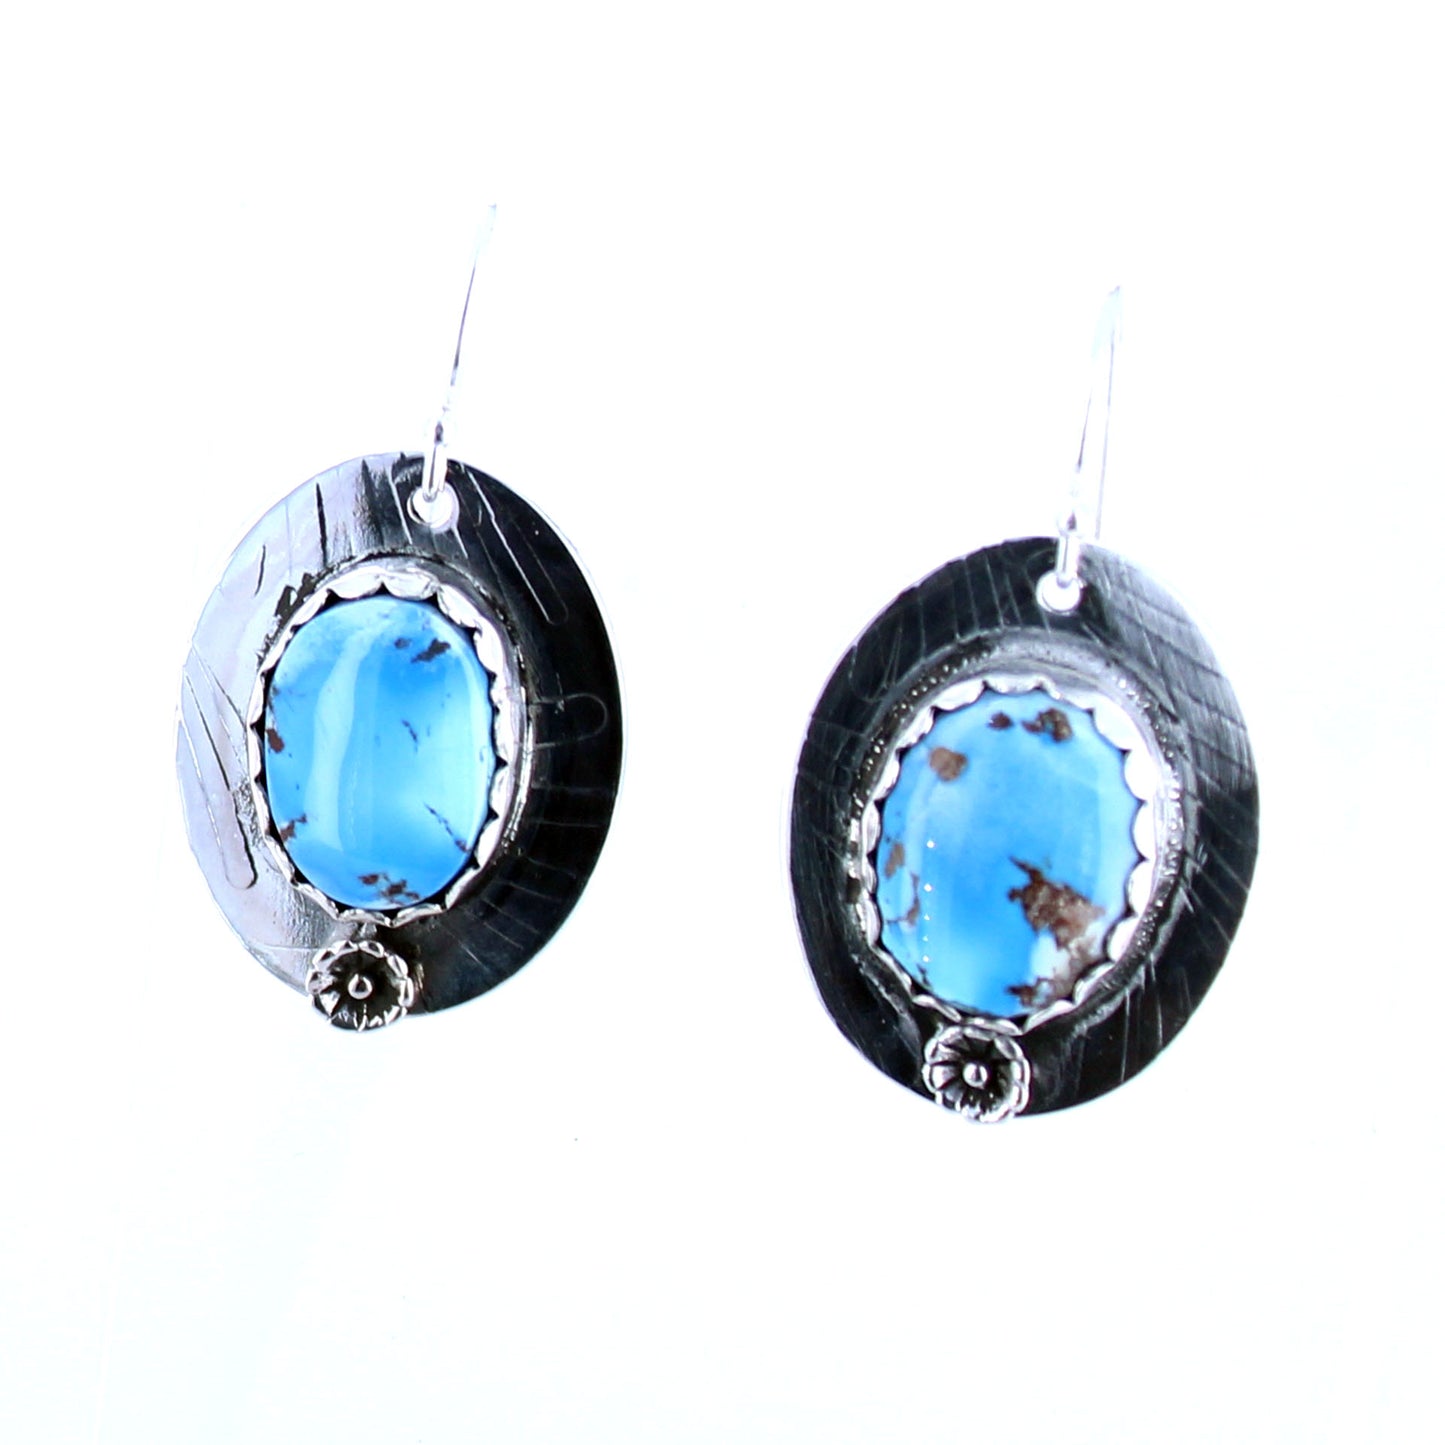 Kazakhstan Turquoise Earrings Oval Patterned Sterling Silver -NewWorldGems